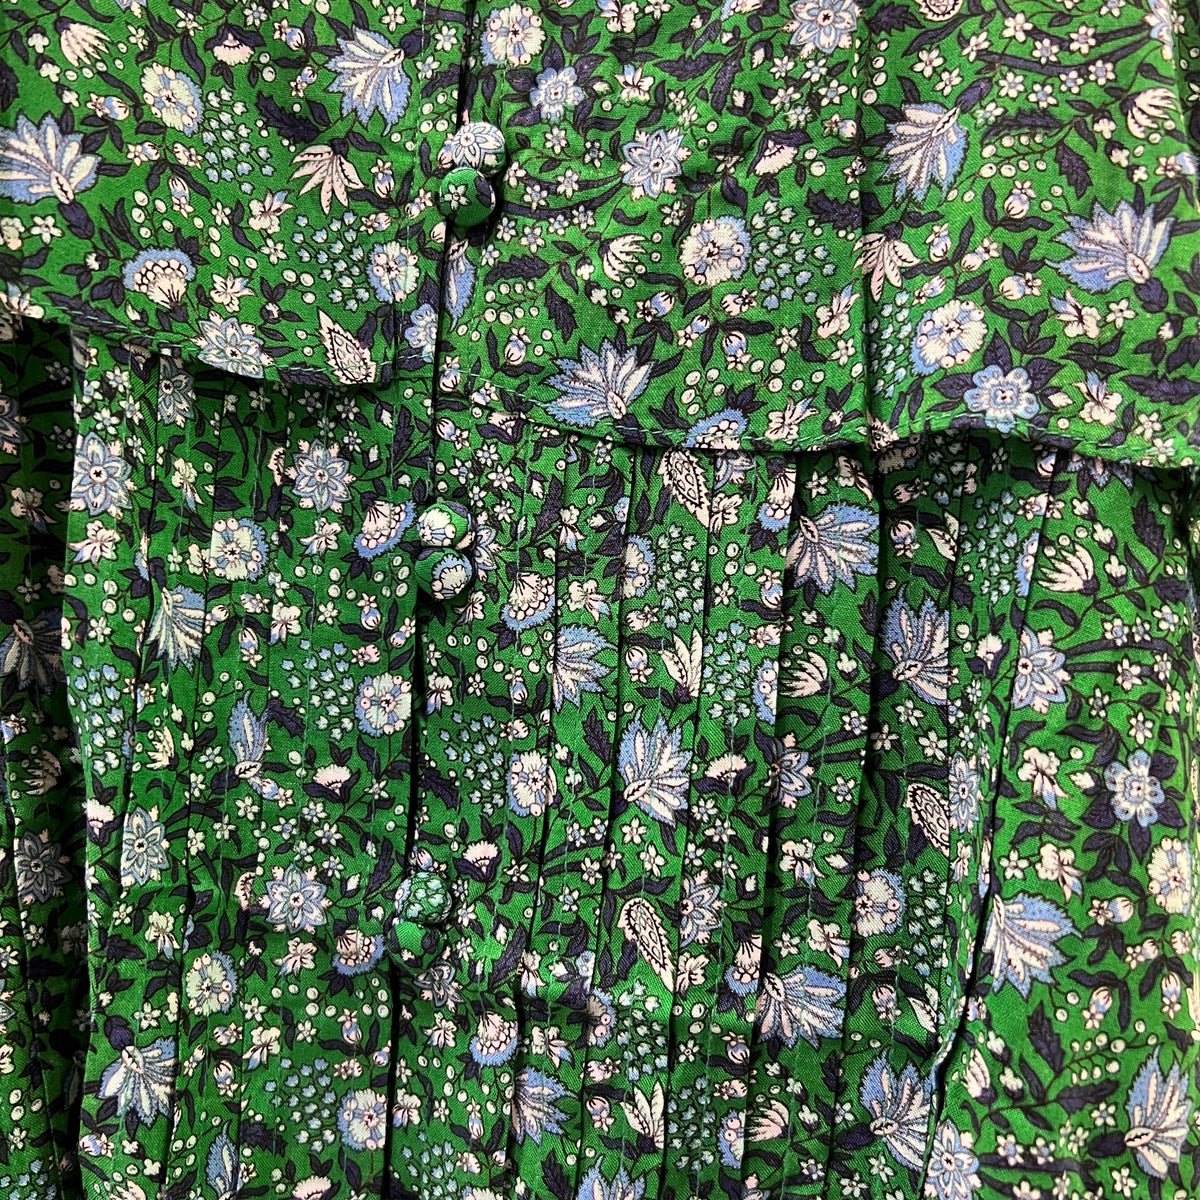 Découvrez la toute nouvelle collection de blouse a bretelle ajustable de la marque Vieha, offerte dans une gamme étendue de couleurs éclatantes et tendance. Conçues avec des bretelles fines pour vous procurer une sensation de fraîcheur incomparable tout au long de l'été.